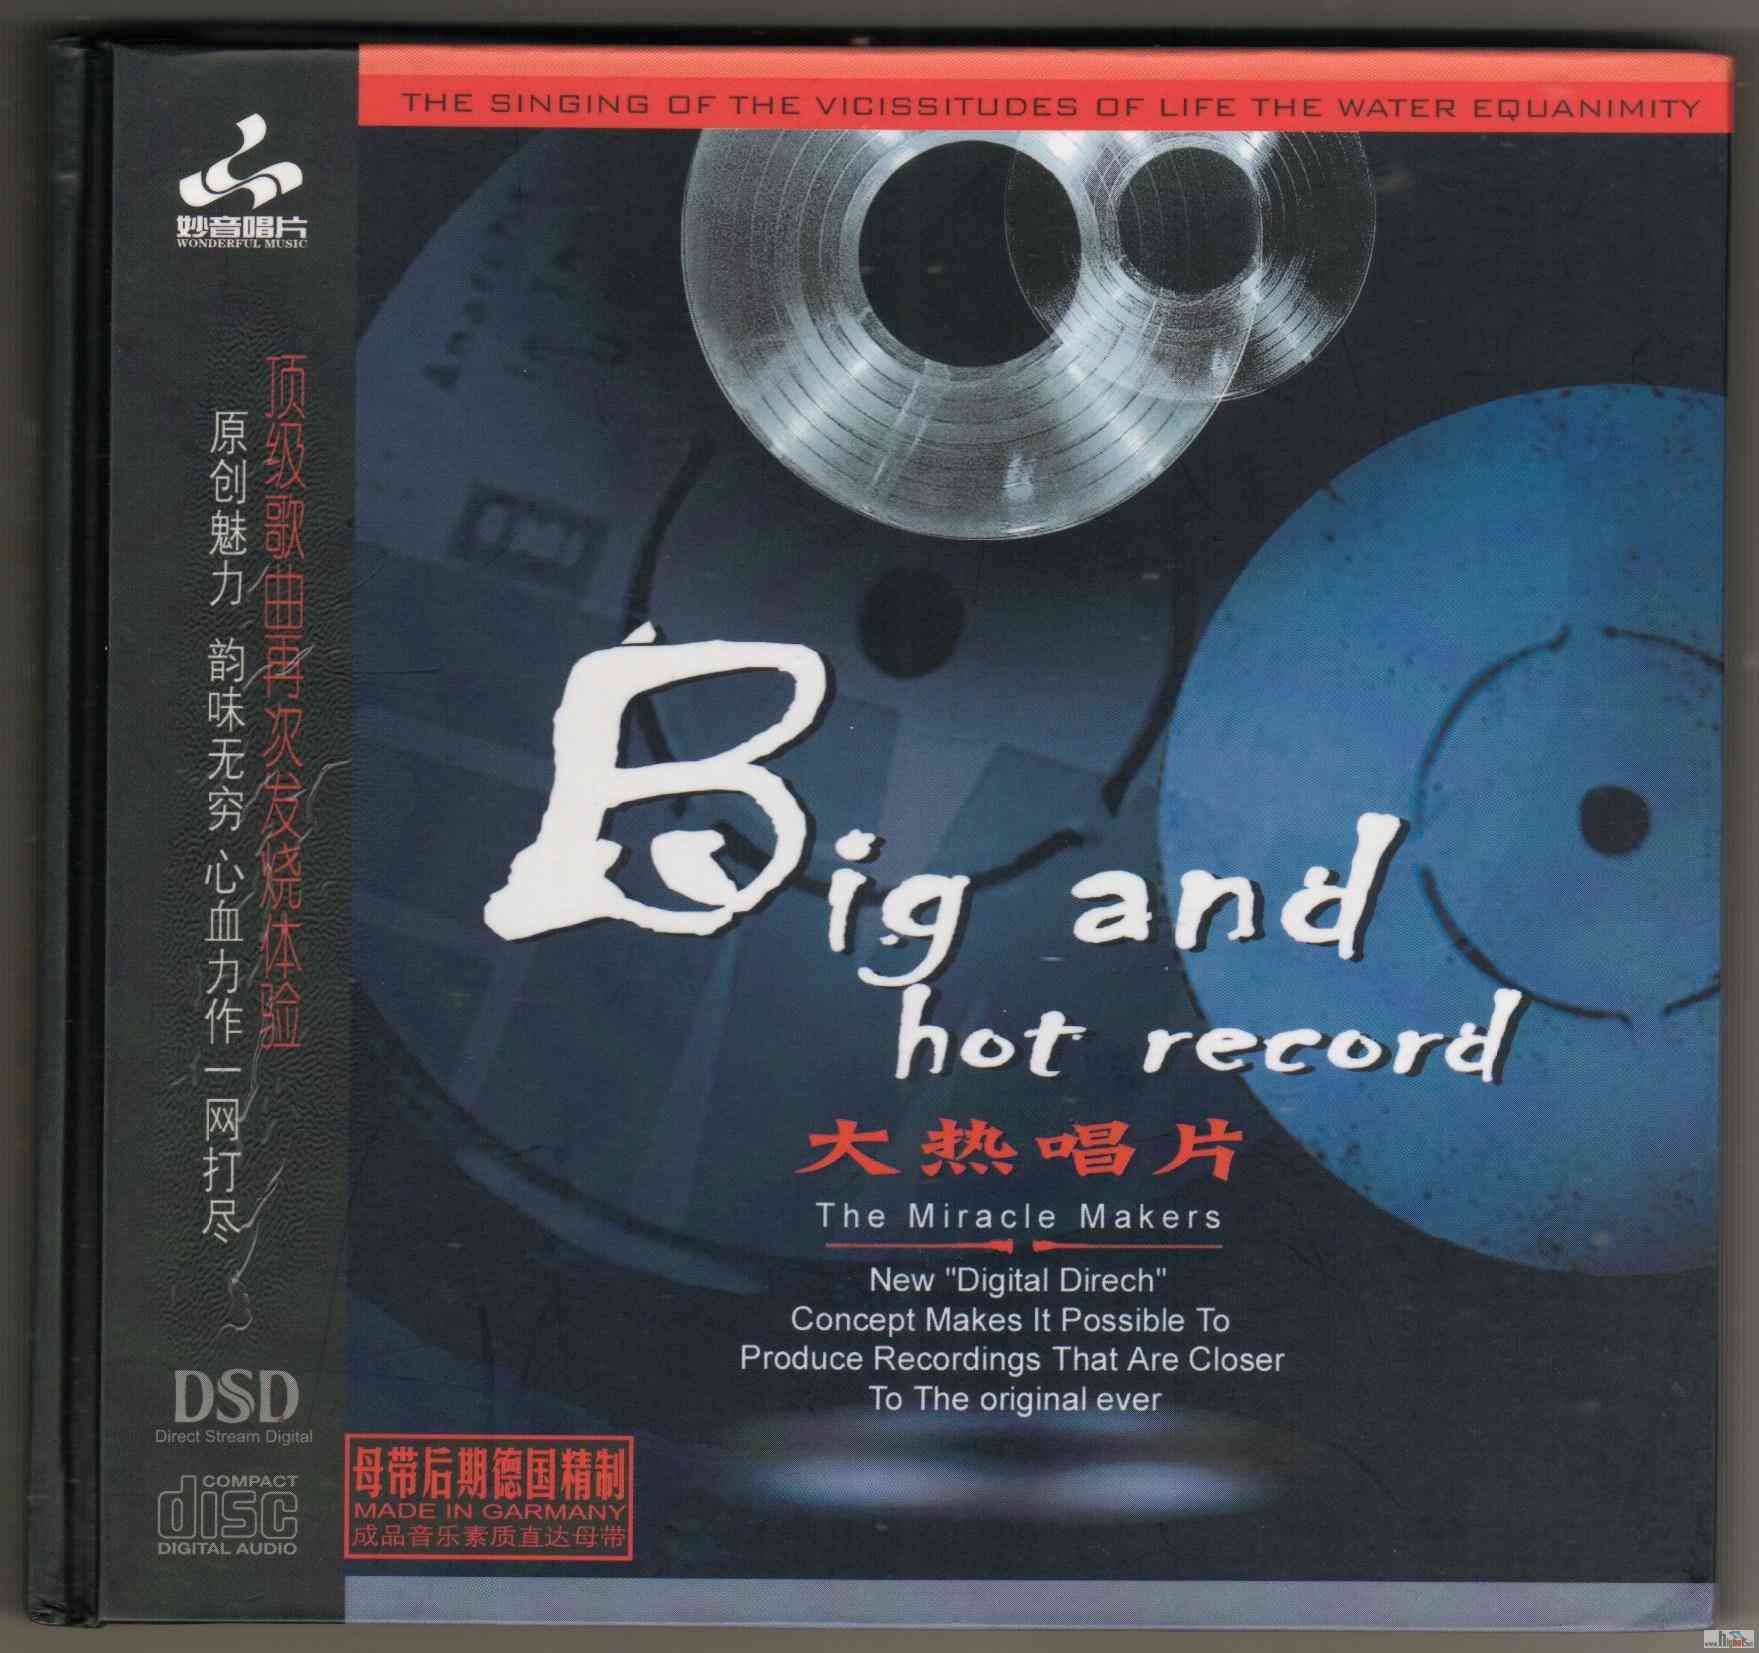 00-va_-_big_and_hot_record-cover-cpop-2005-luna.jpg